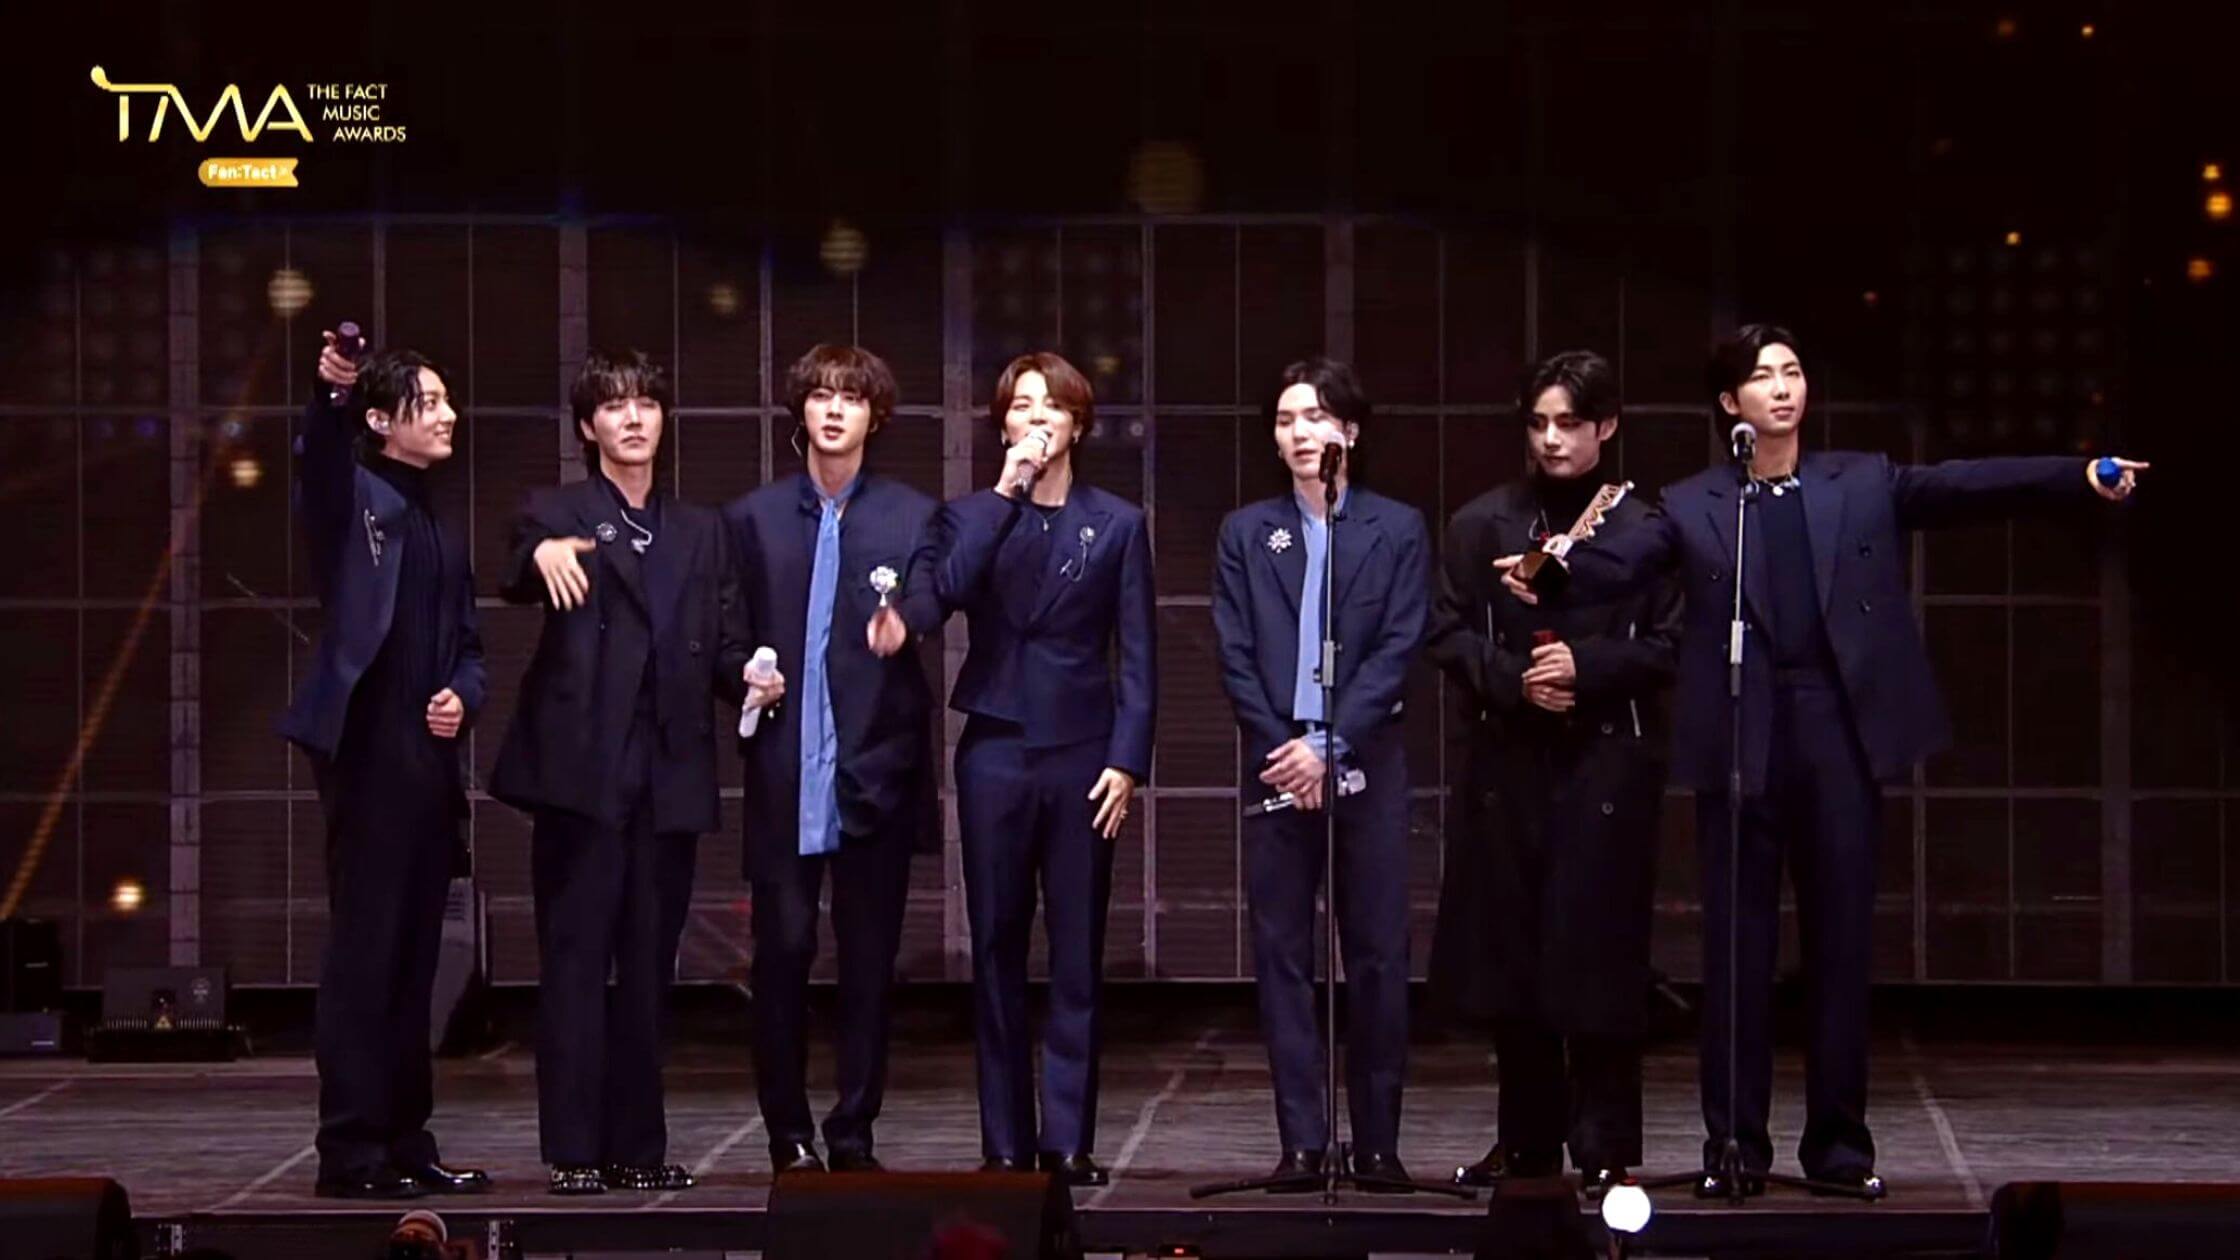 BTS en los "Fact Music Awards": una ceremonia de premios para celebrar el K-Pop 